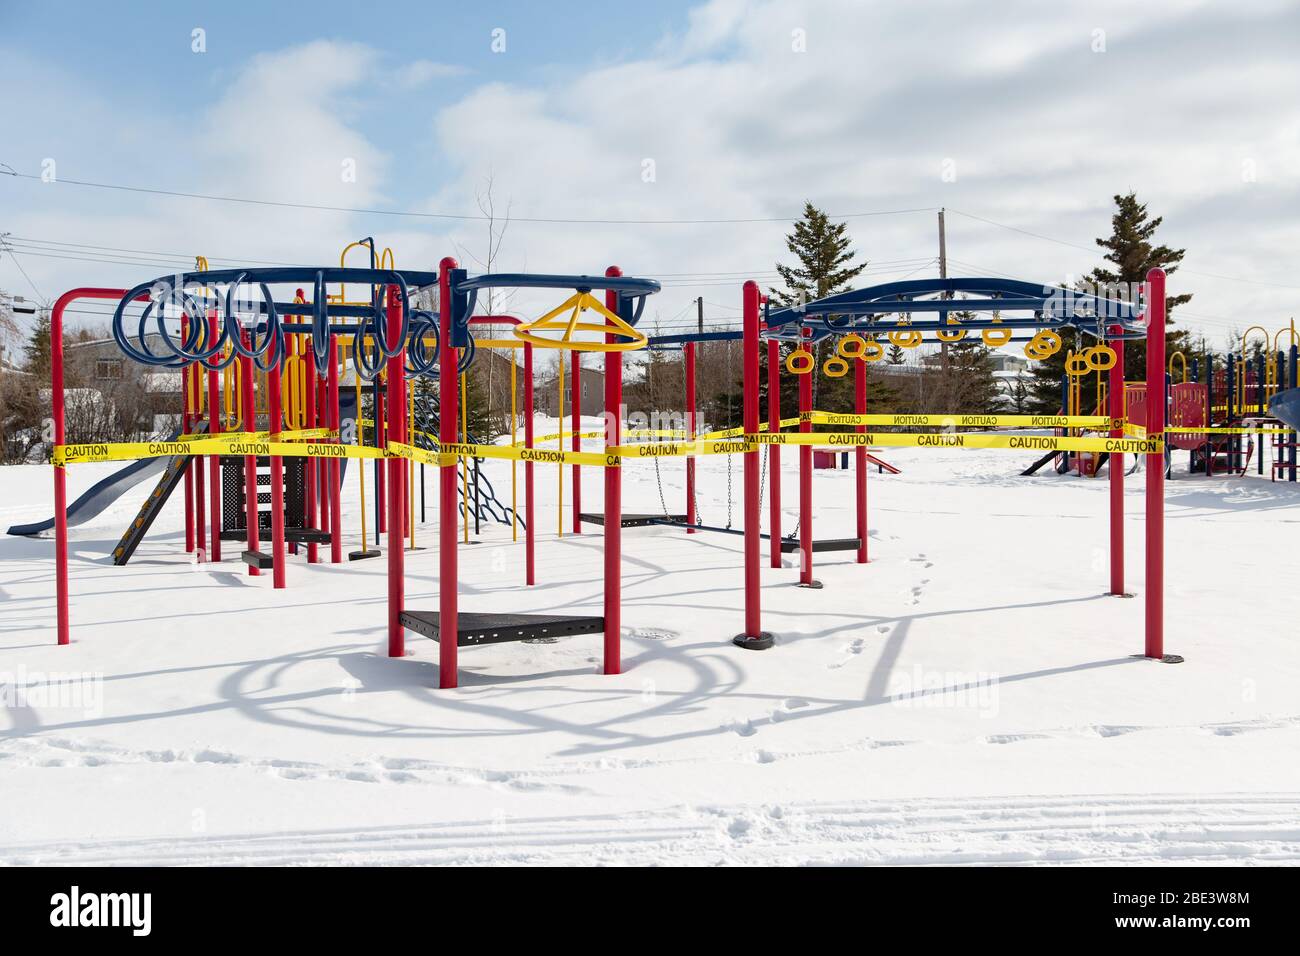 Parksperrung und Spielplatzausrüstung in Schutzband verpackt, Coronavirus COVID-19 Pandemie, Winter, Yellowknife, Northwest Territories, April 2020. Stockfoto